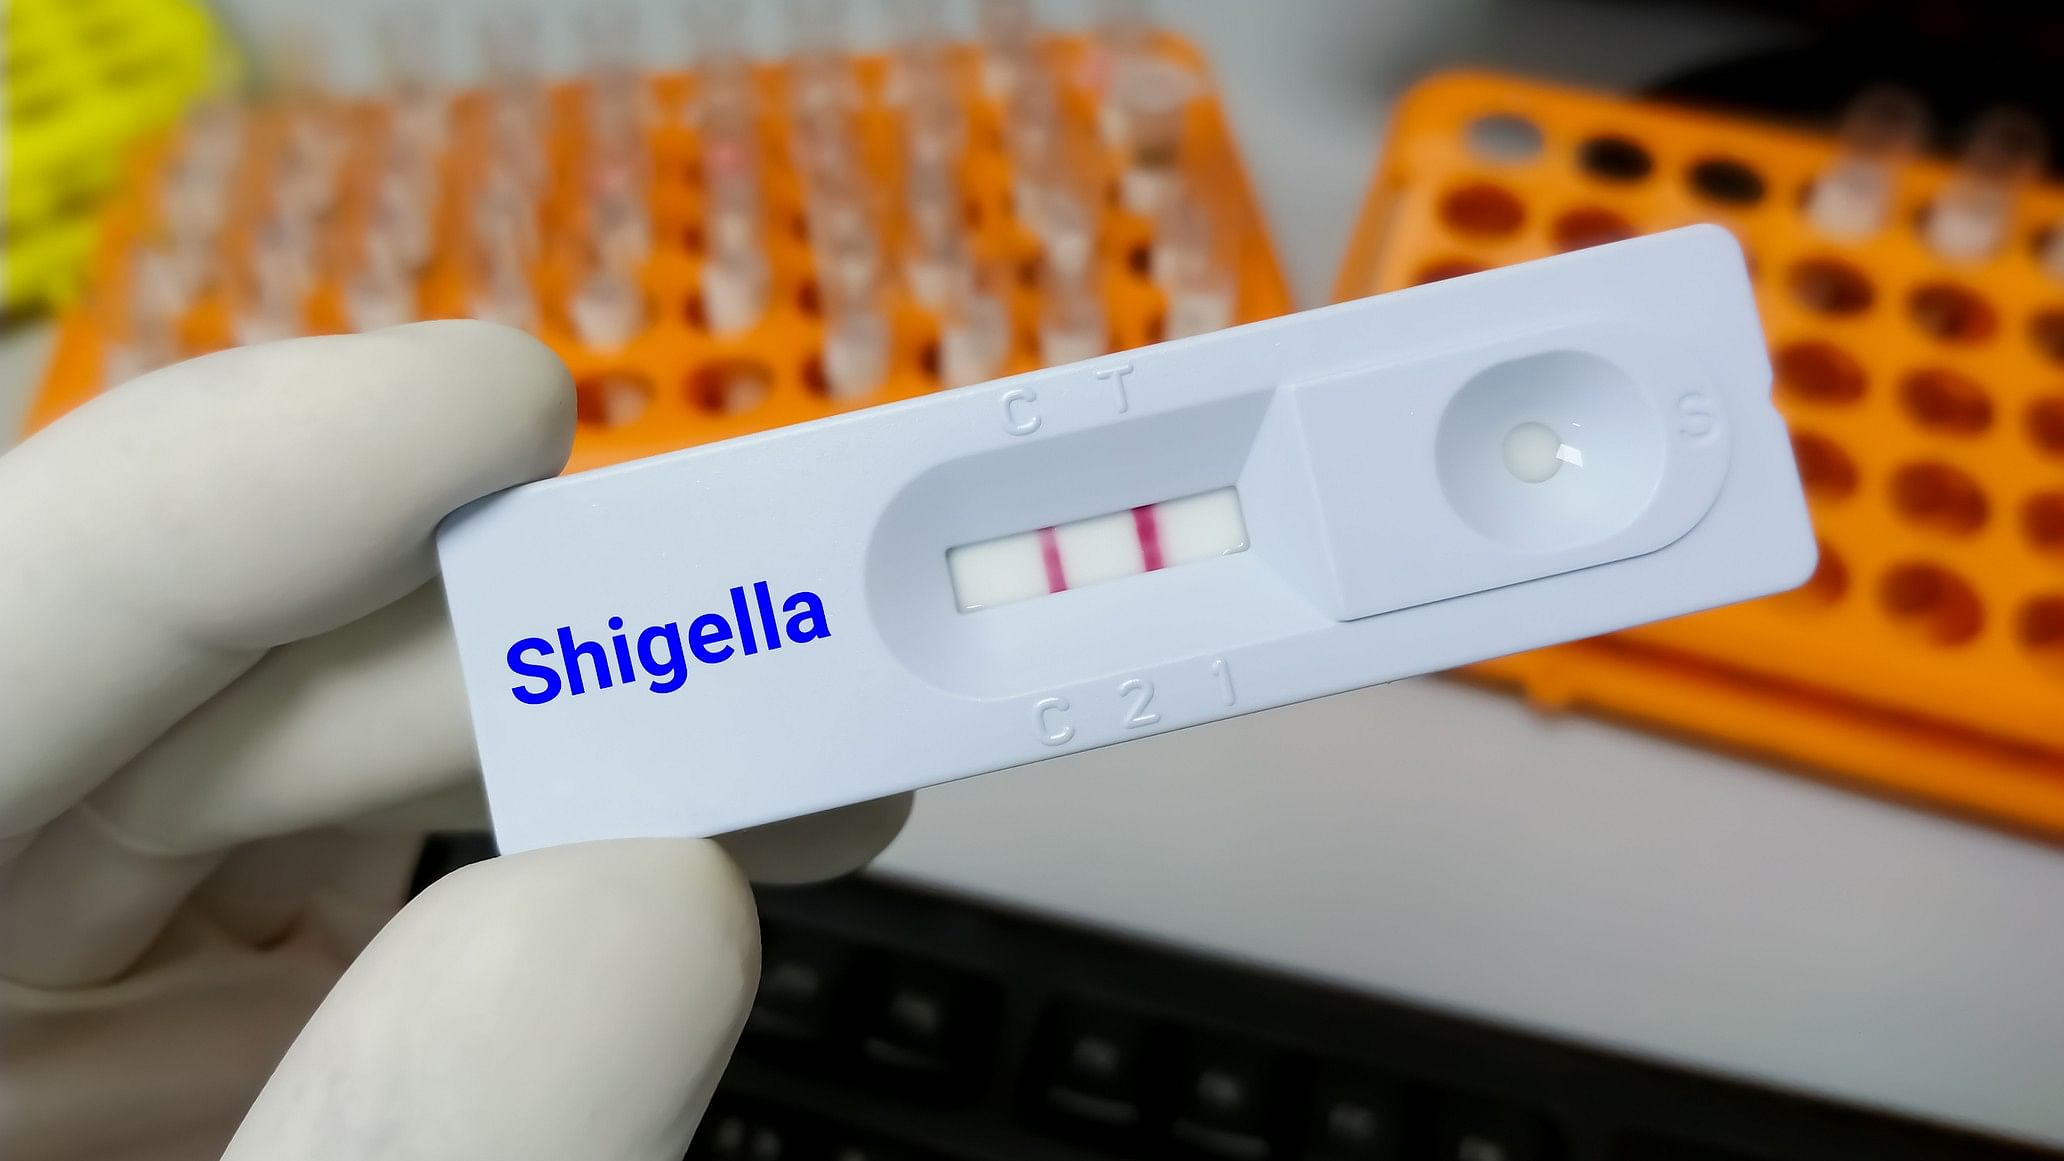 <div class="paragraphs"><p>Rapid test cassette for Shigella infection.</p></div>